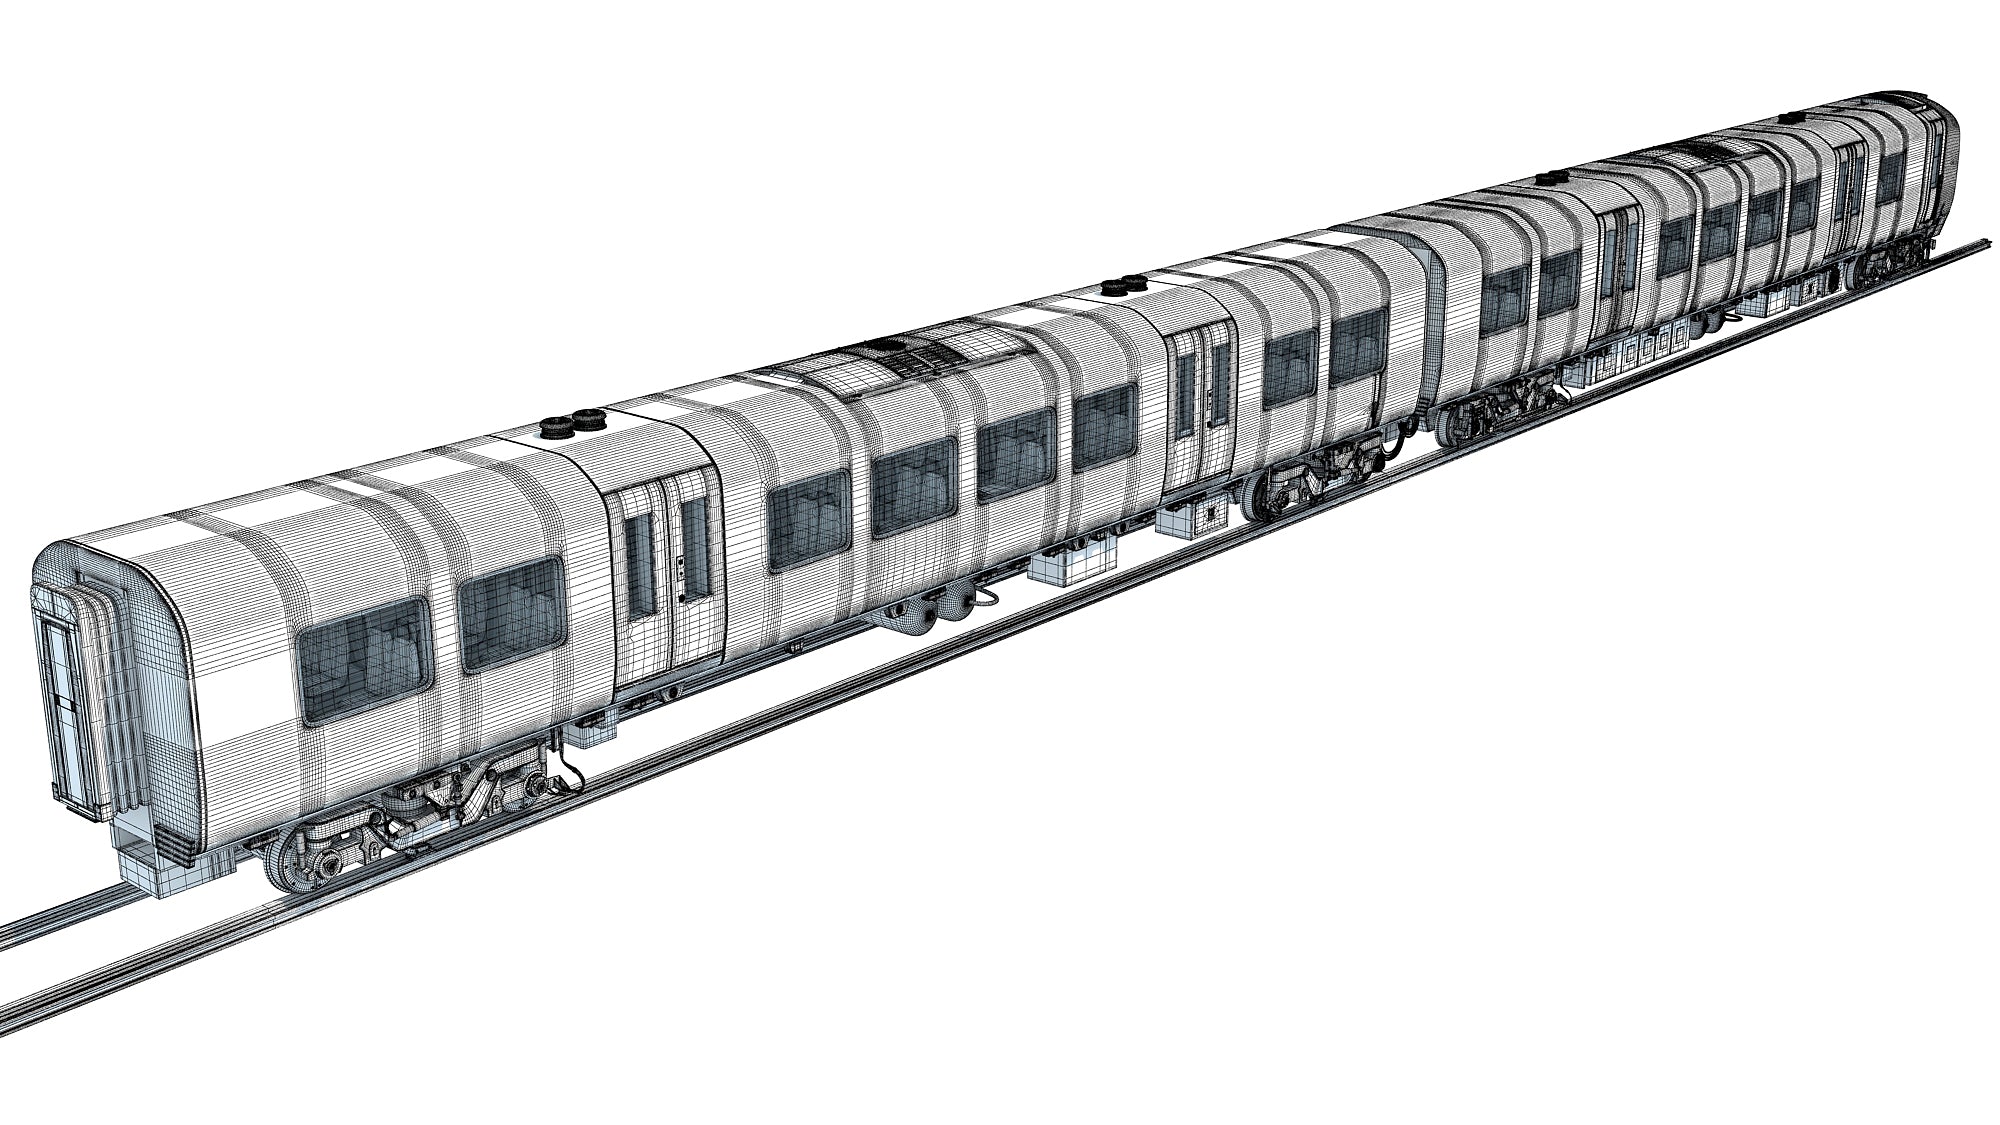 British South West Rail Class 3D Model